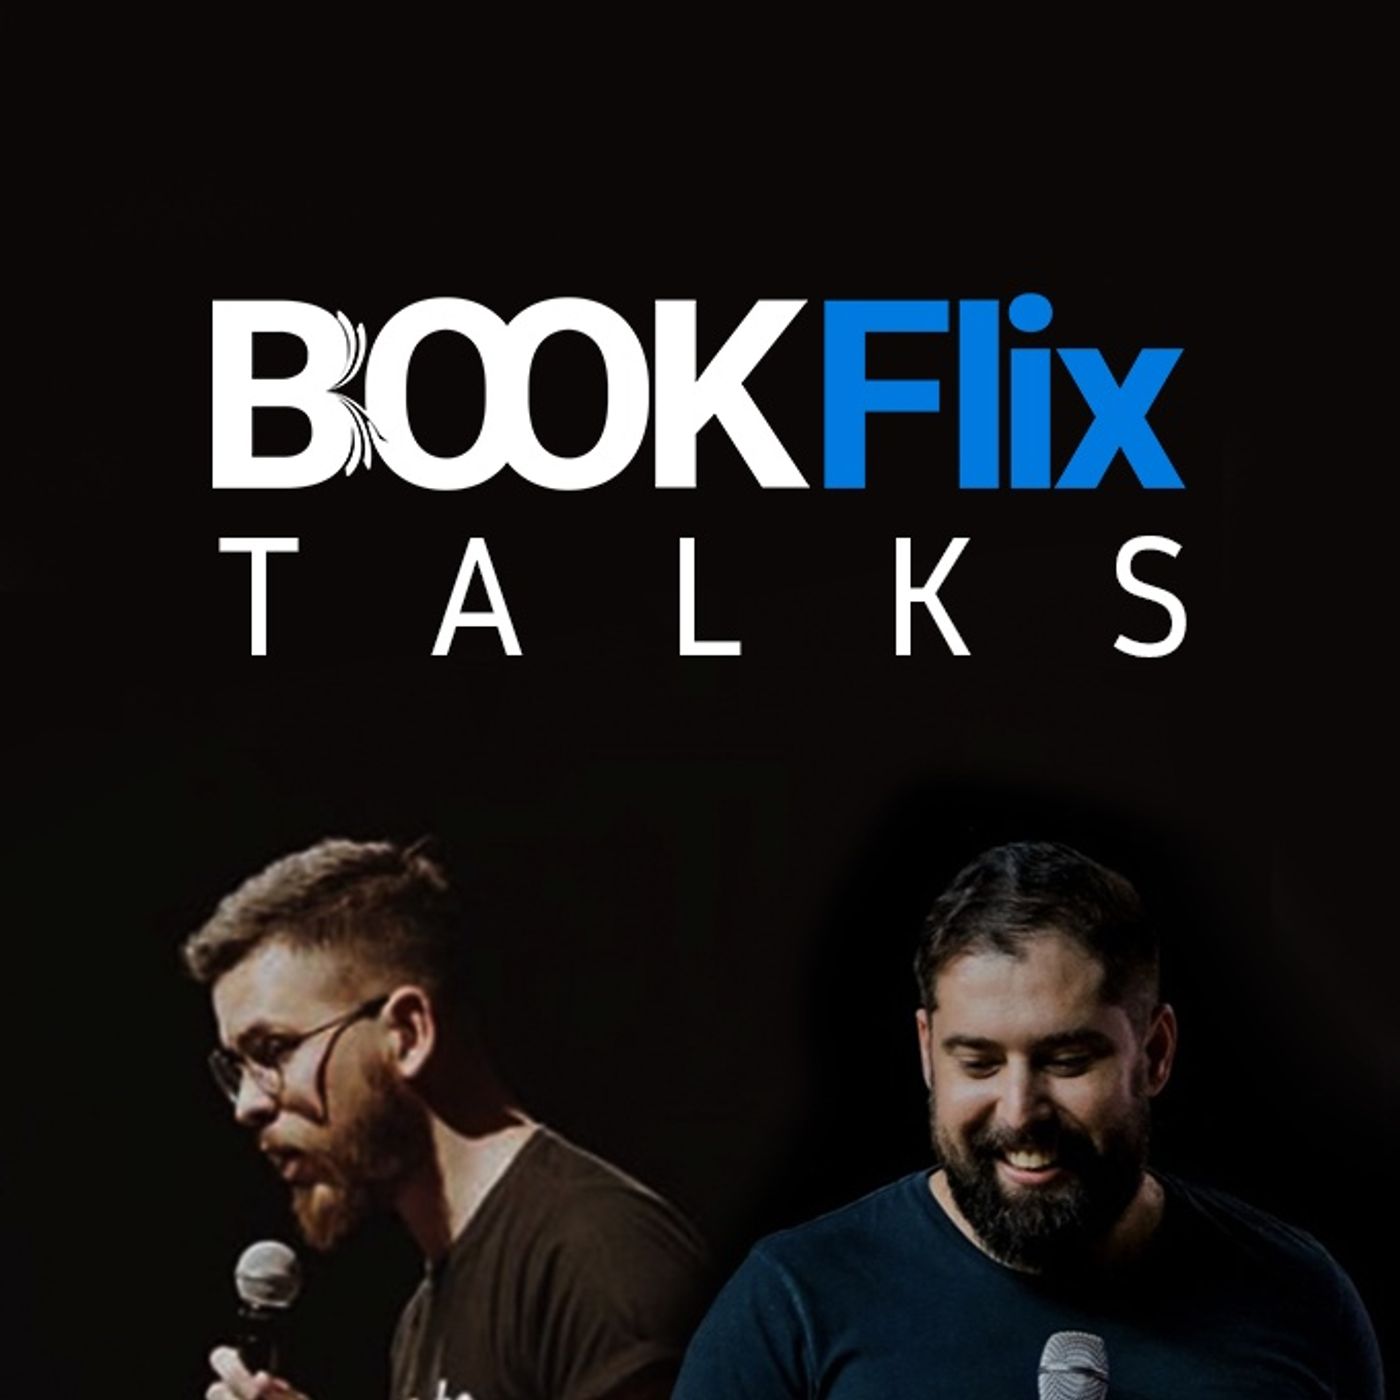 BookFlix Talks